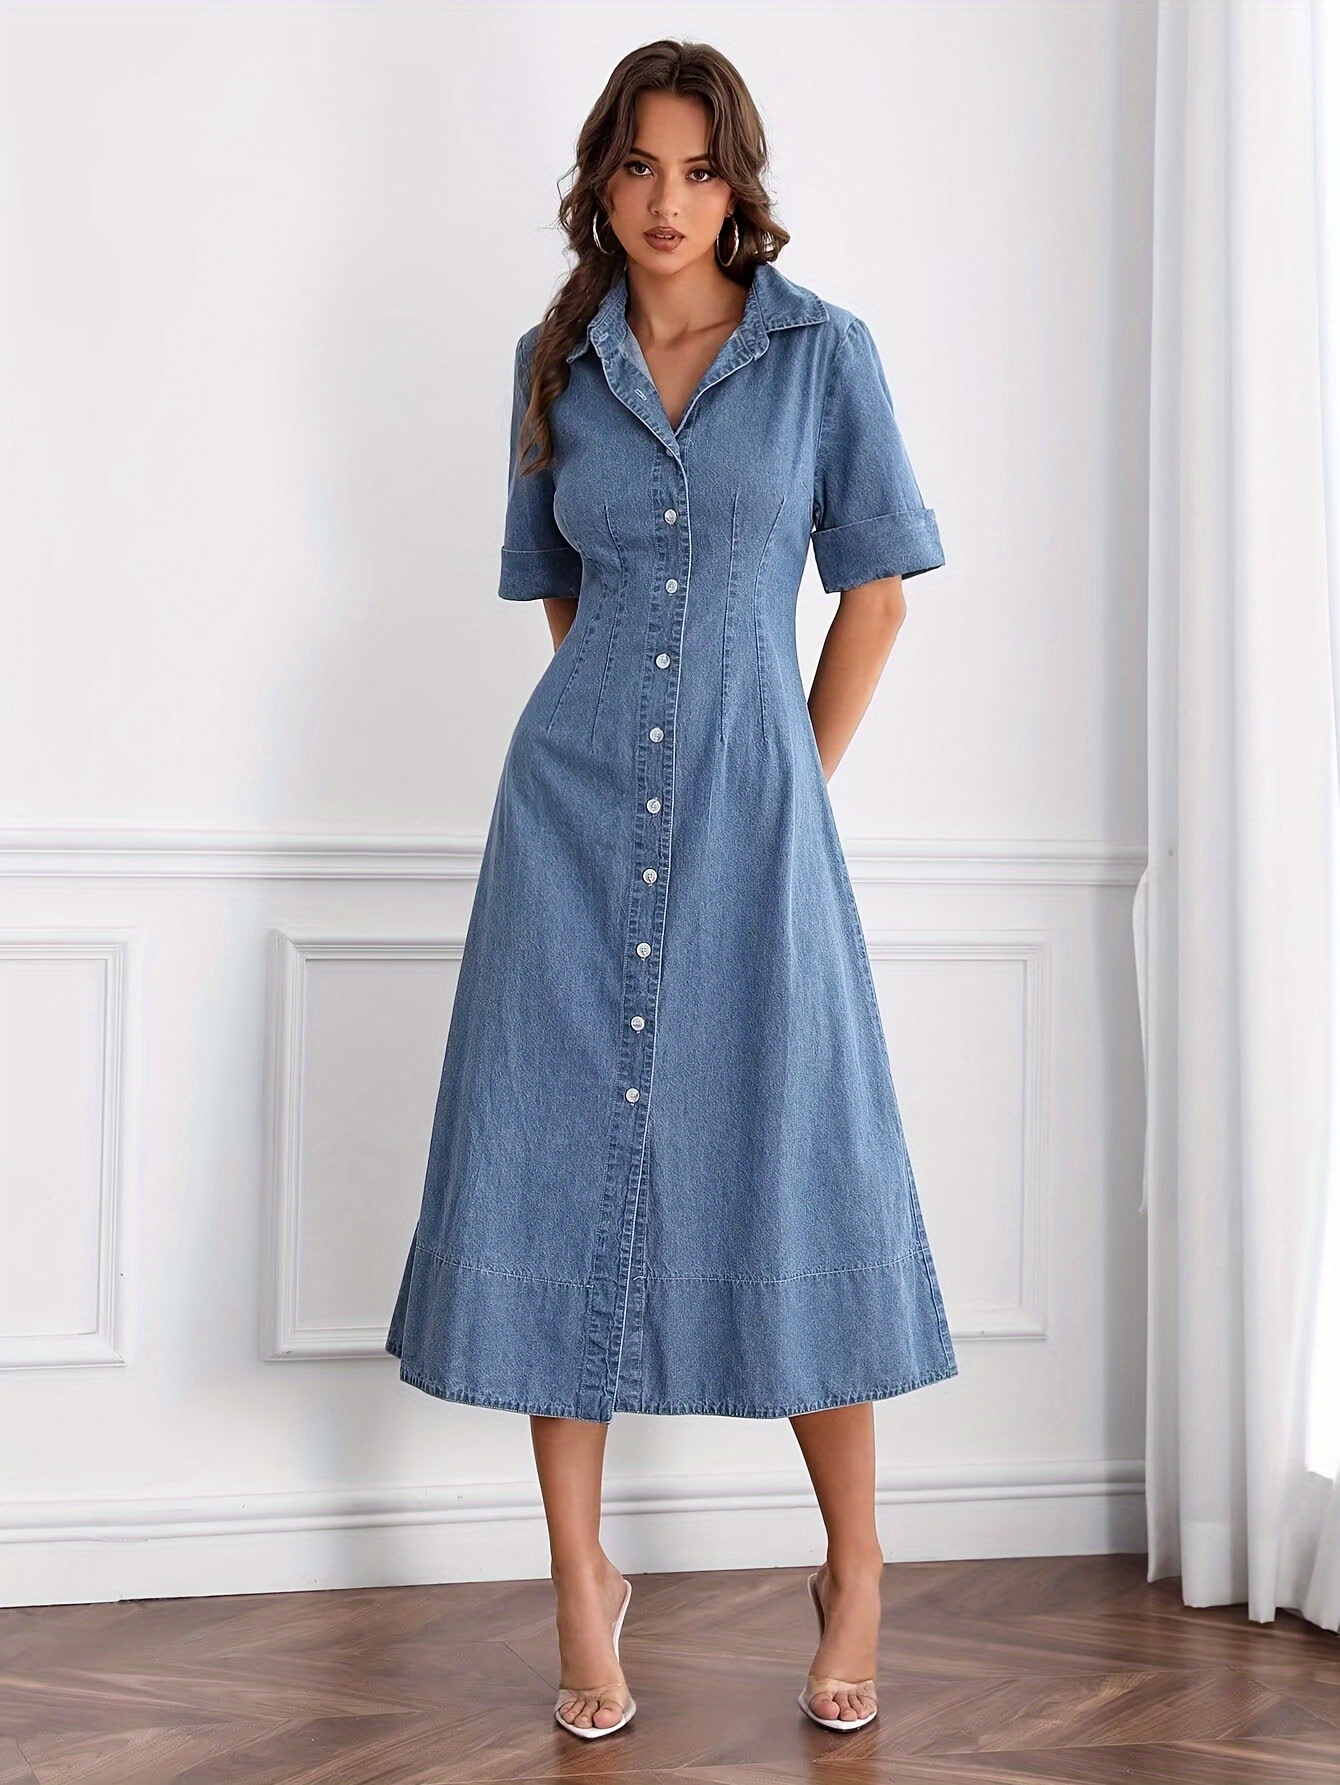 Irregular Slit Denim Strap Dress For Women Vintage Loose Long